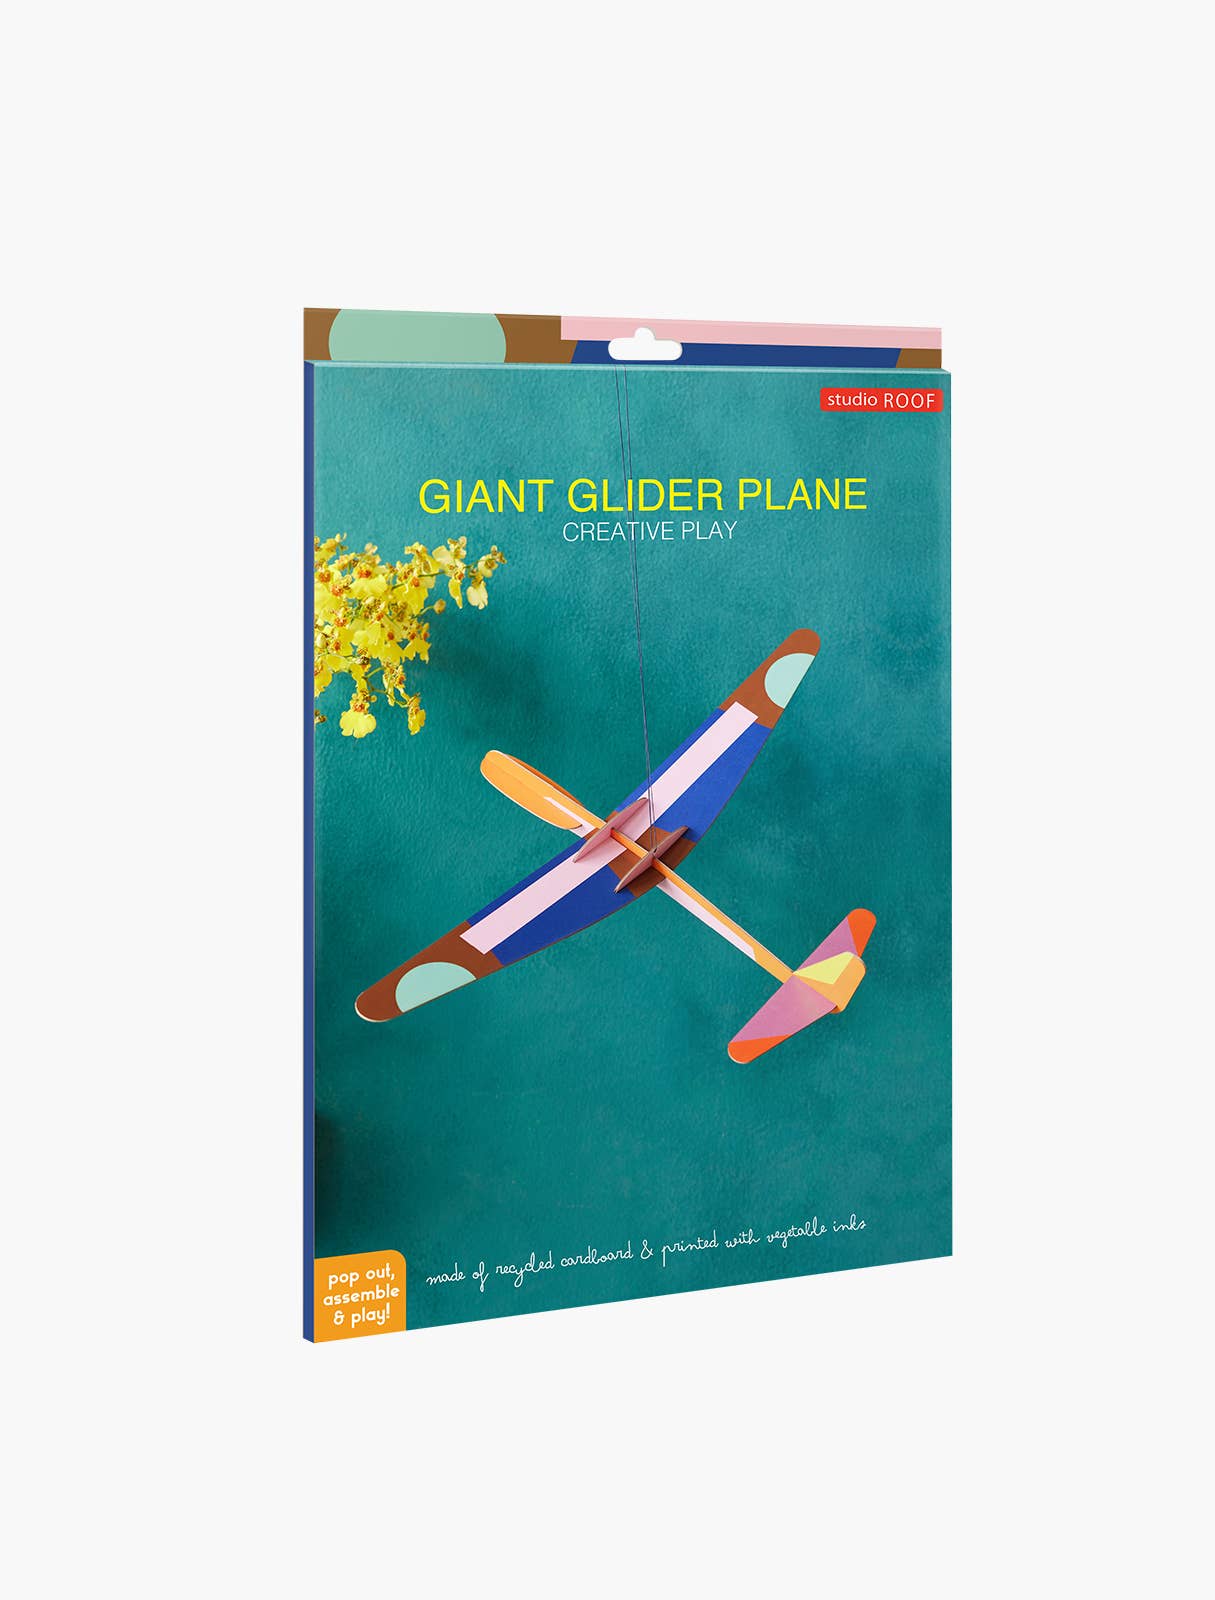 Giant Glider Plane